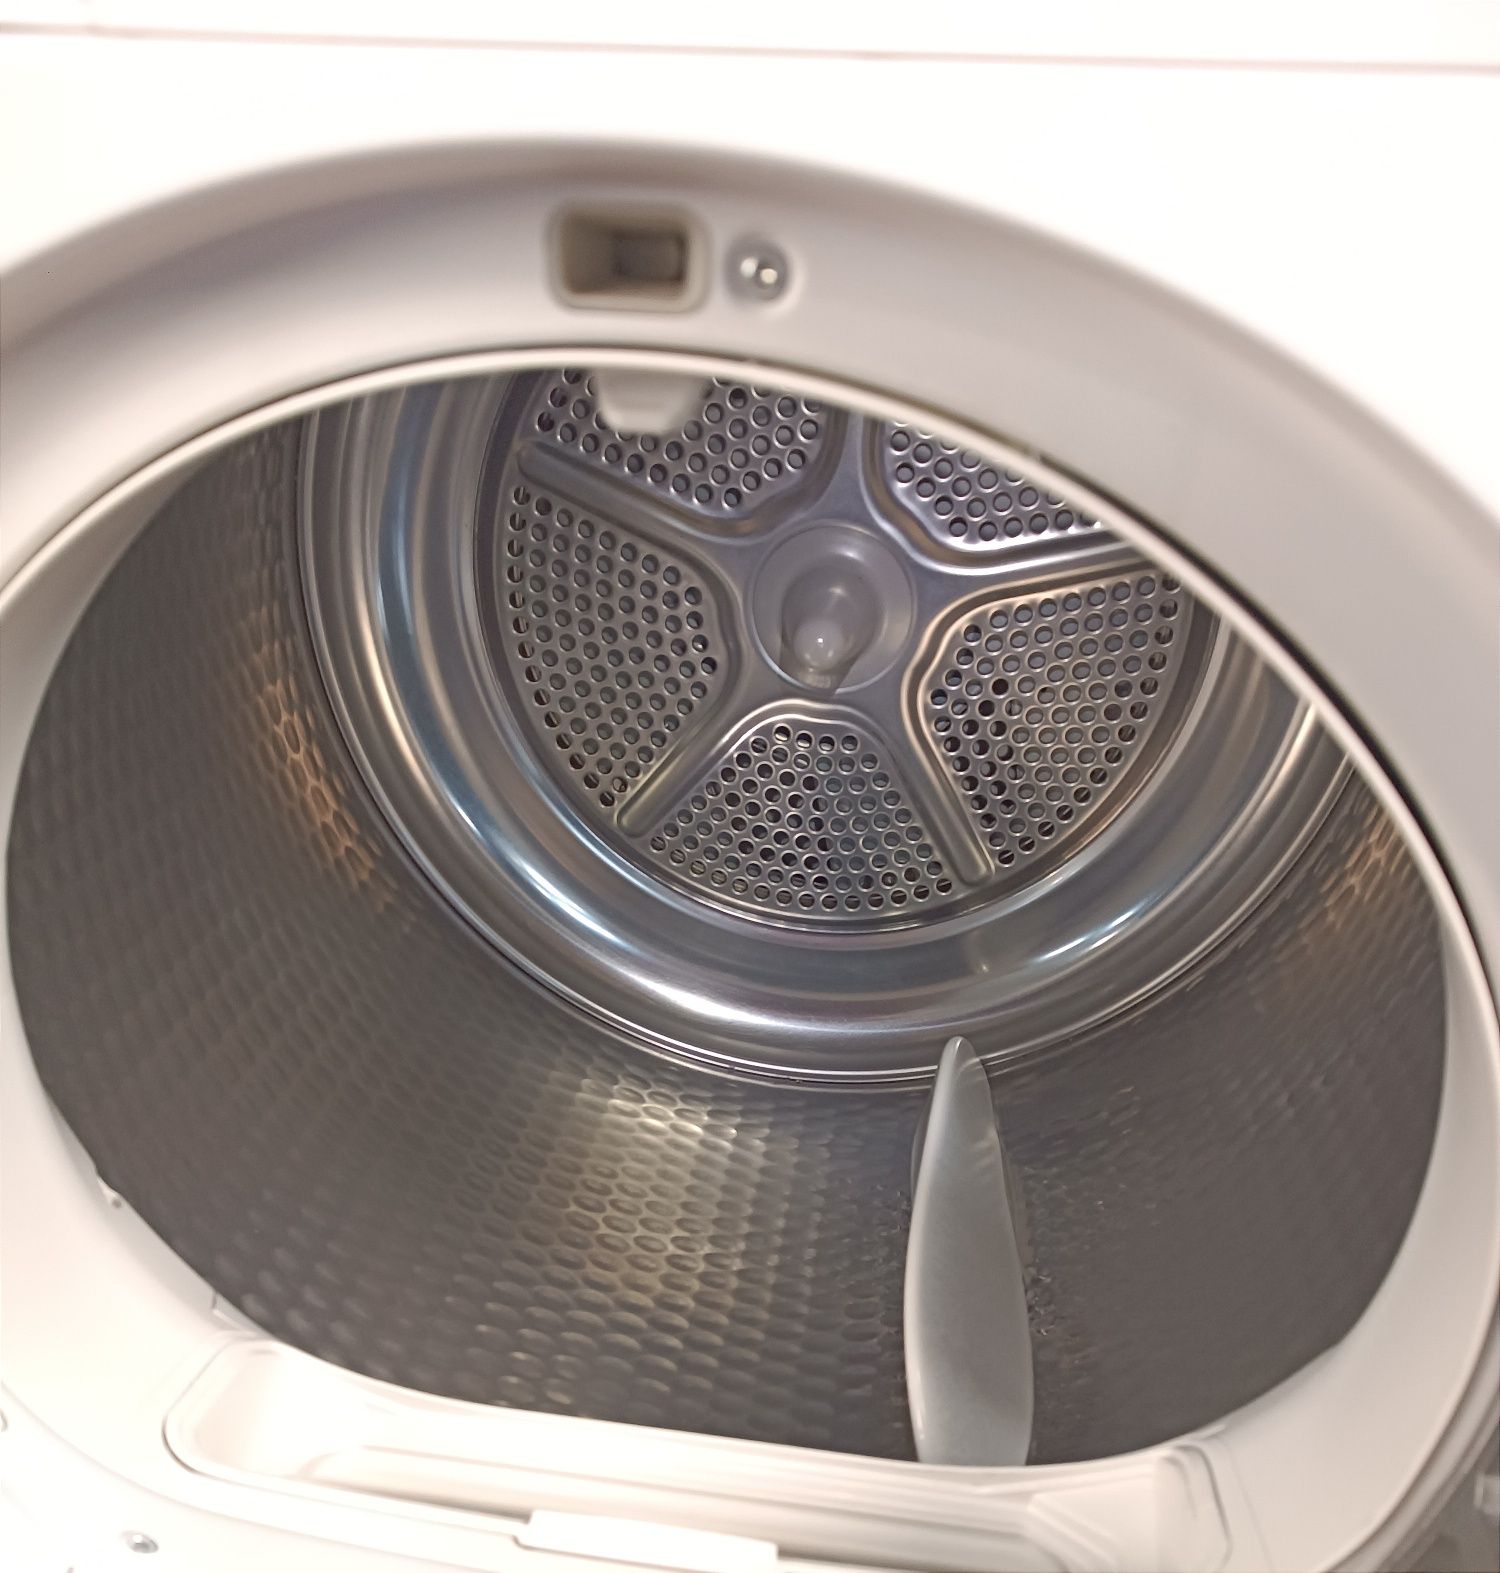 Сушильна машина/сушка для белья,одягу Bosch 7кг конденсаційна гарантія